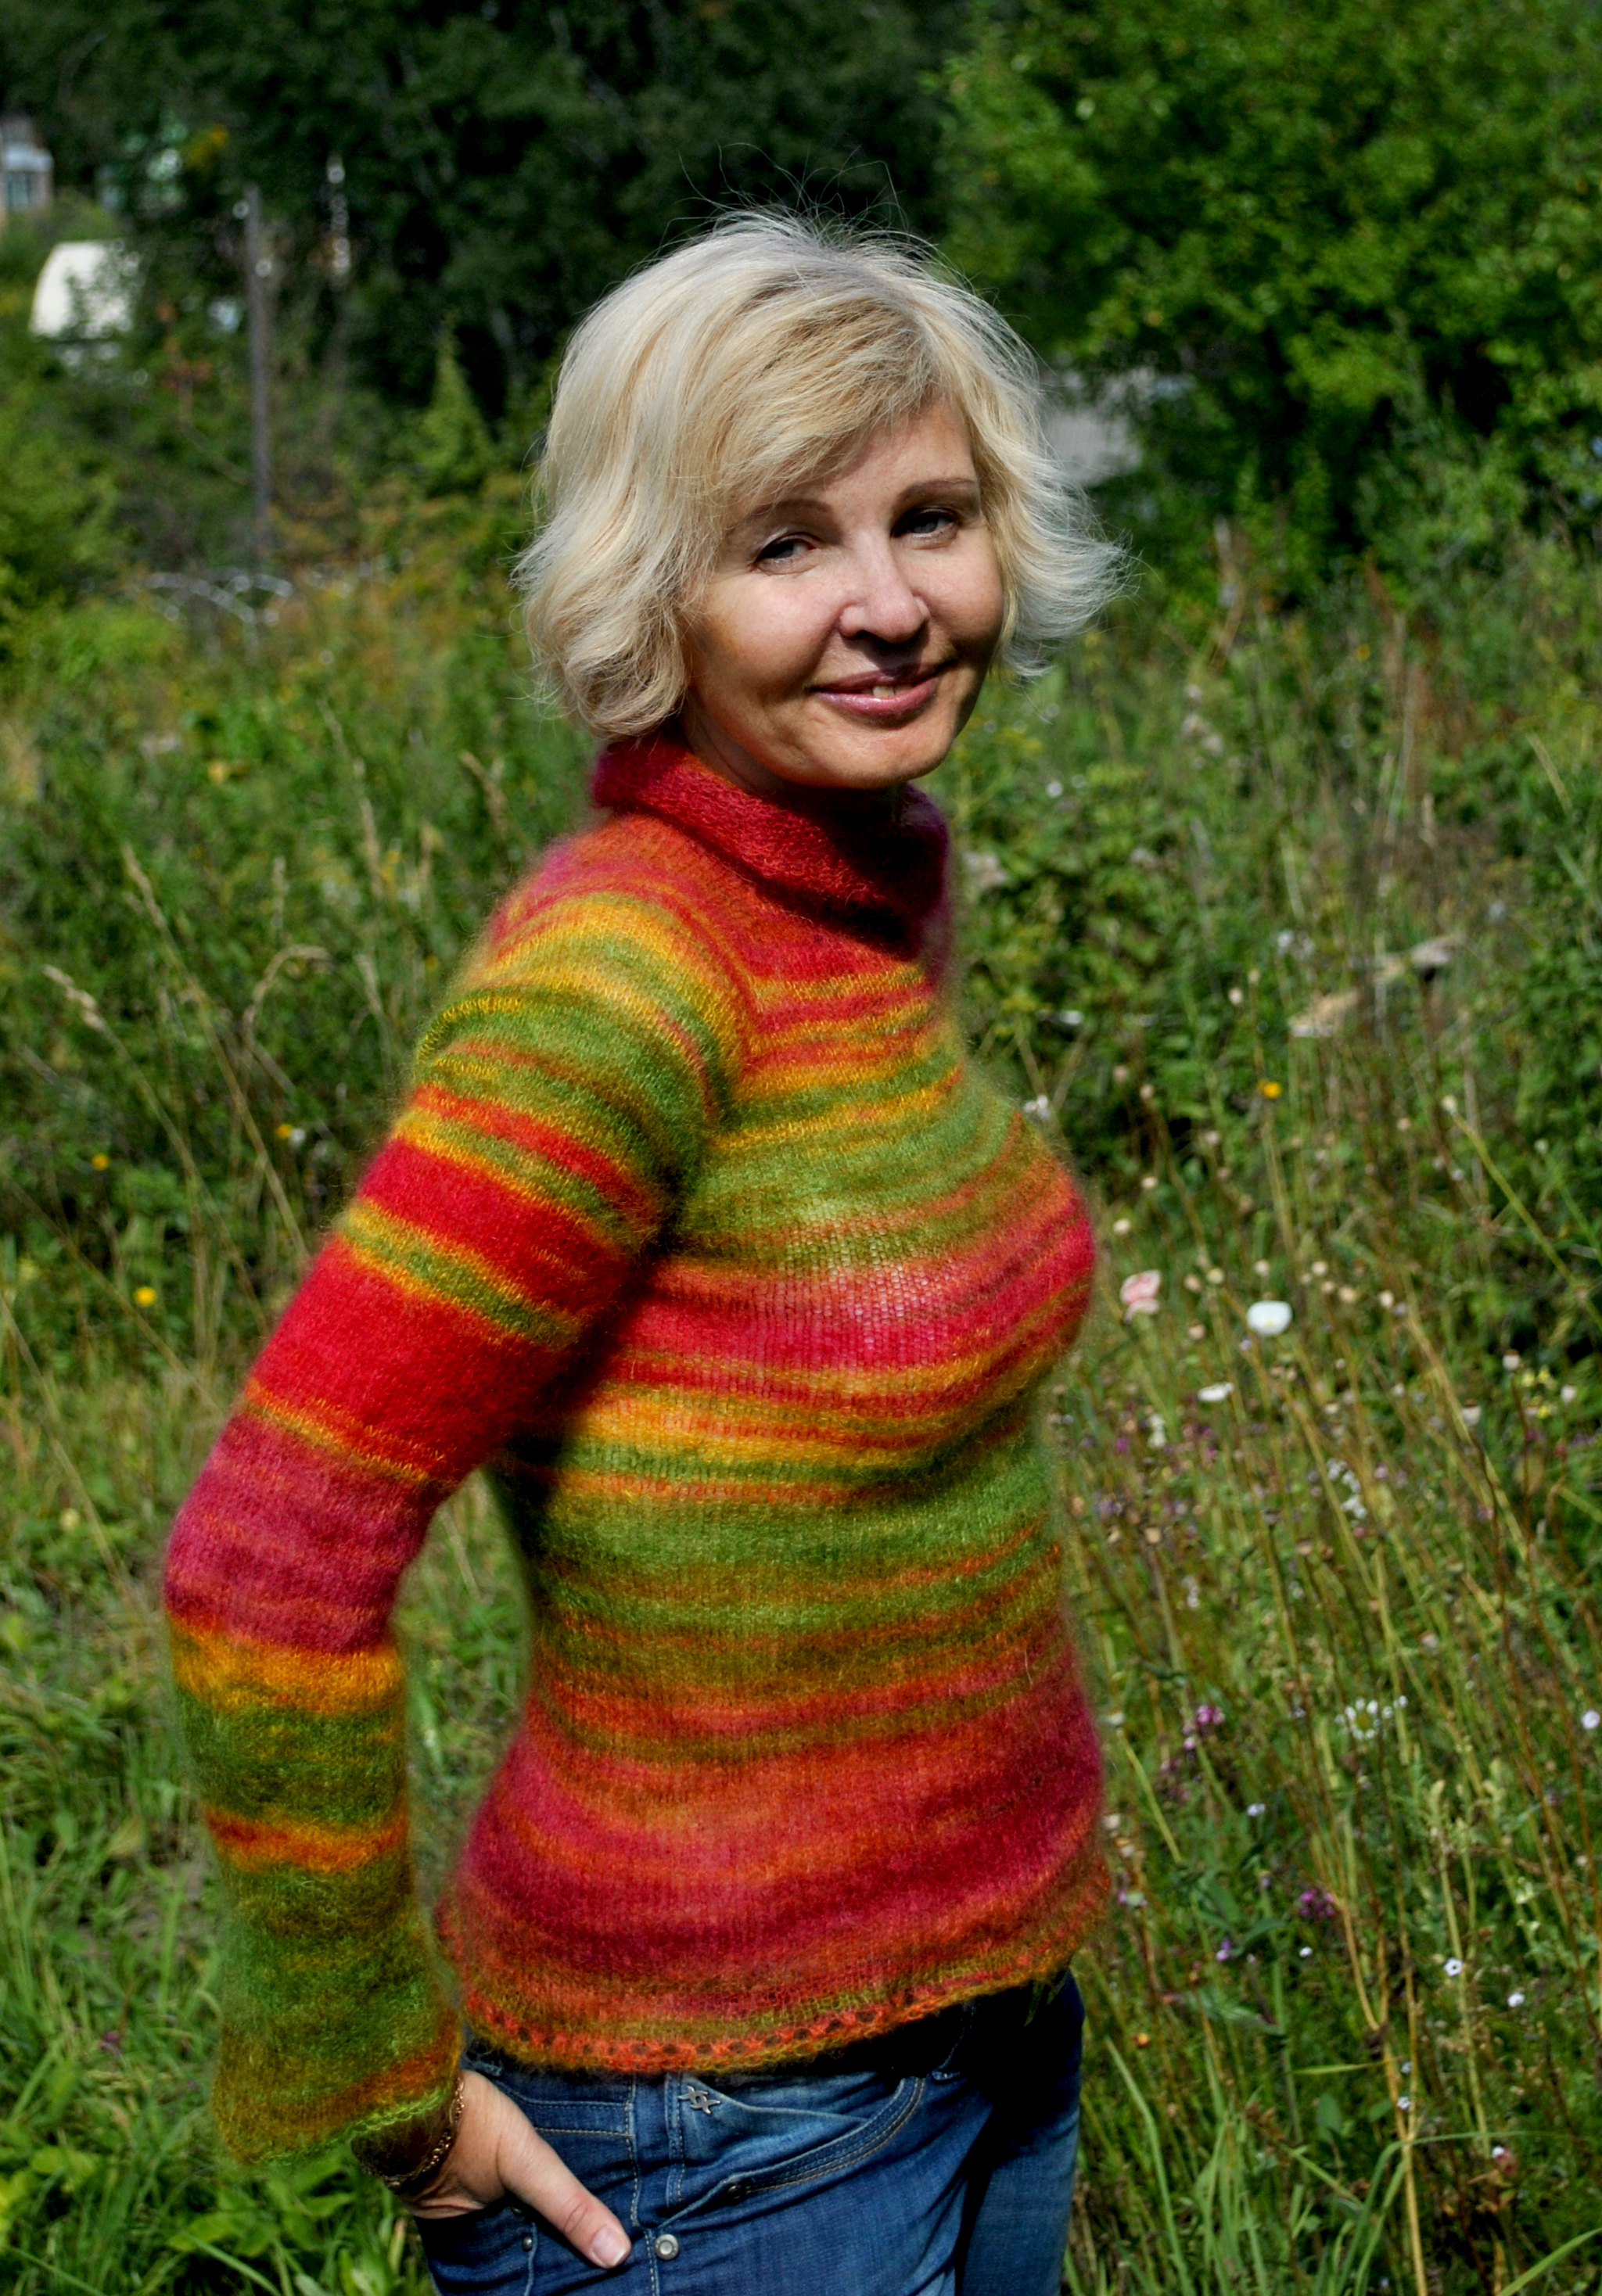 Мохеровый свитер